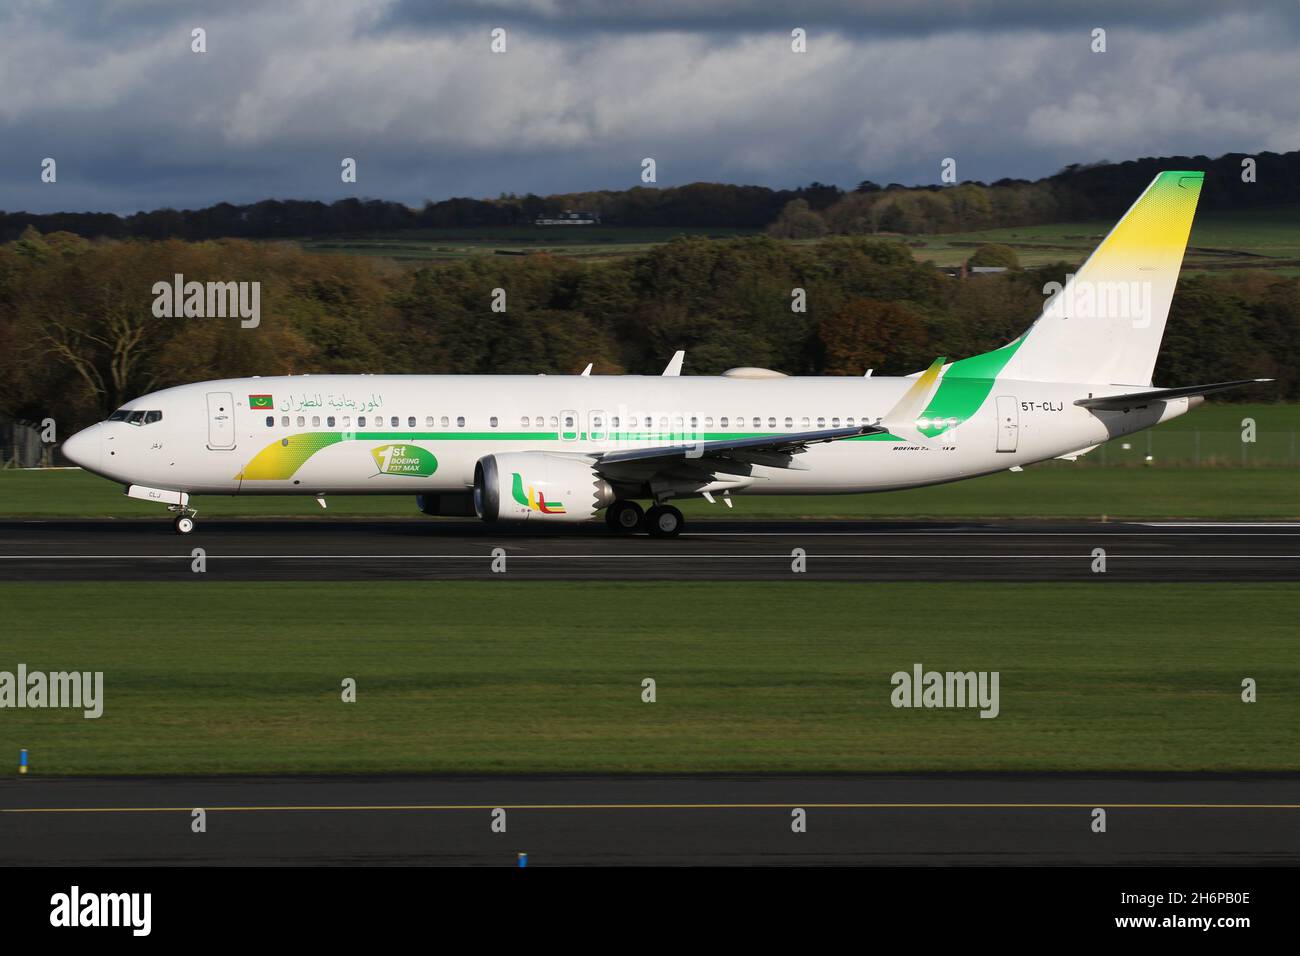 5T-CLJ, un Boeing 737 MAX 8 exploité par Mauritanie Airlines, au départ de l'aéroport international de Prestwick à Ayrshire, en Écosse, l'avion était en Écosse pour amener les délégués mauritaniens à la conférence COP26 sur les changements climatiques qui s'est tenue dans la ville voisine de Glasgow. Banque D'Images